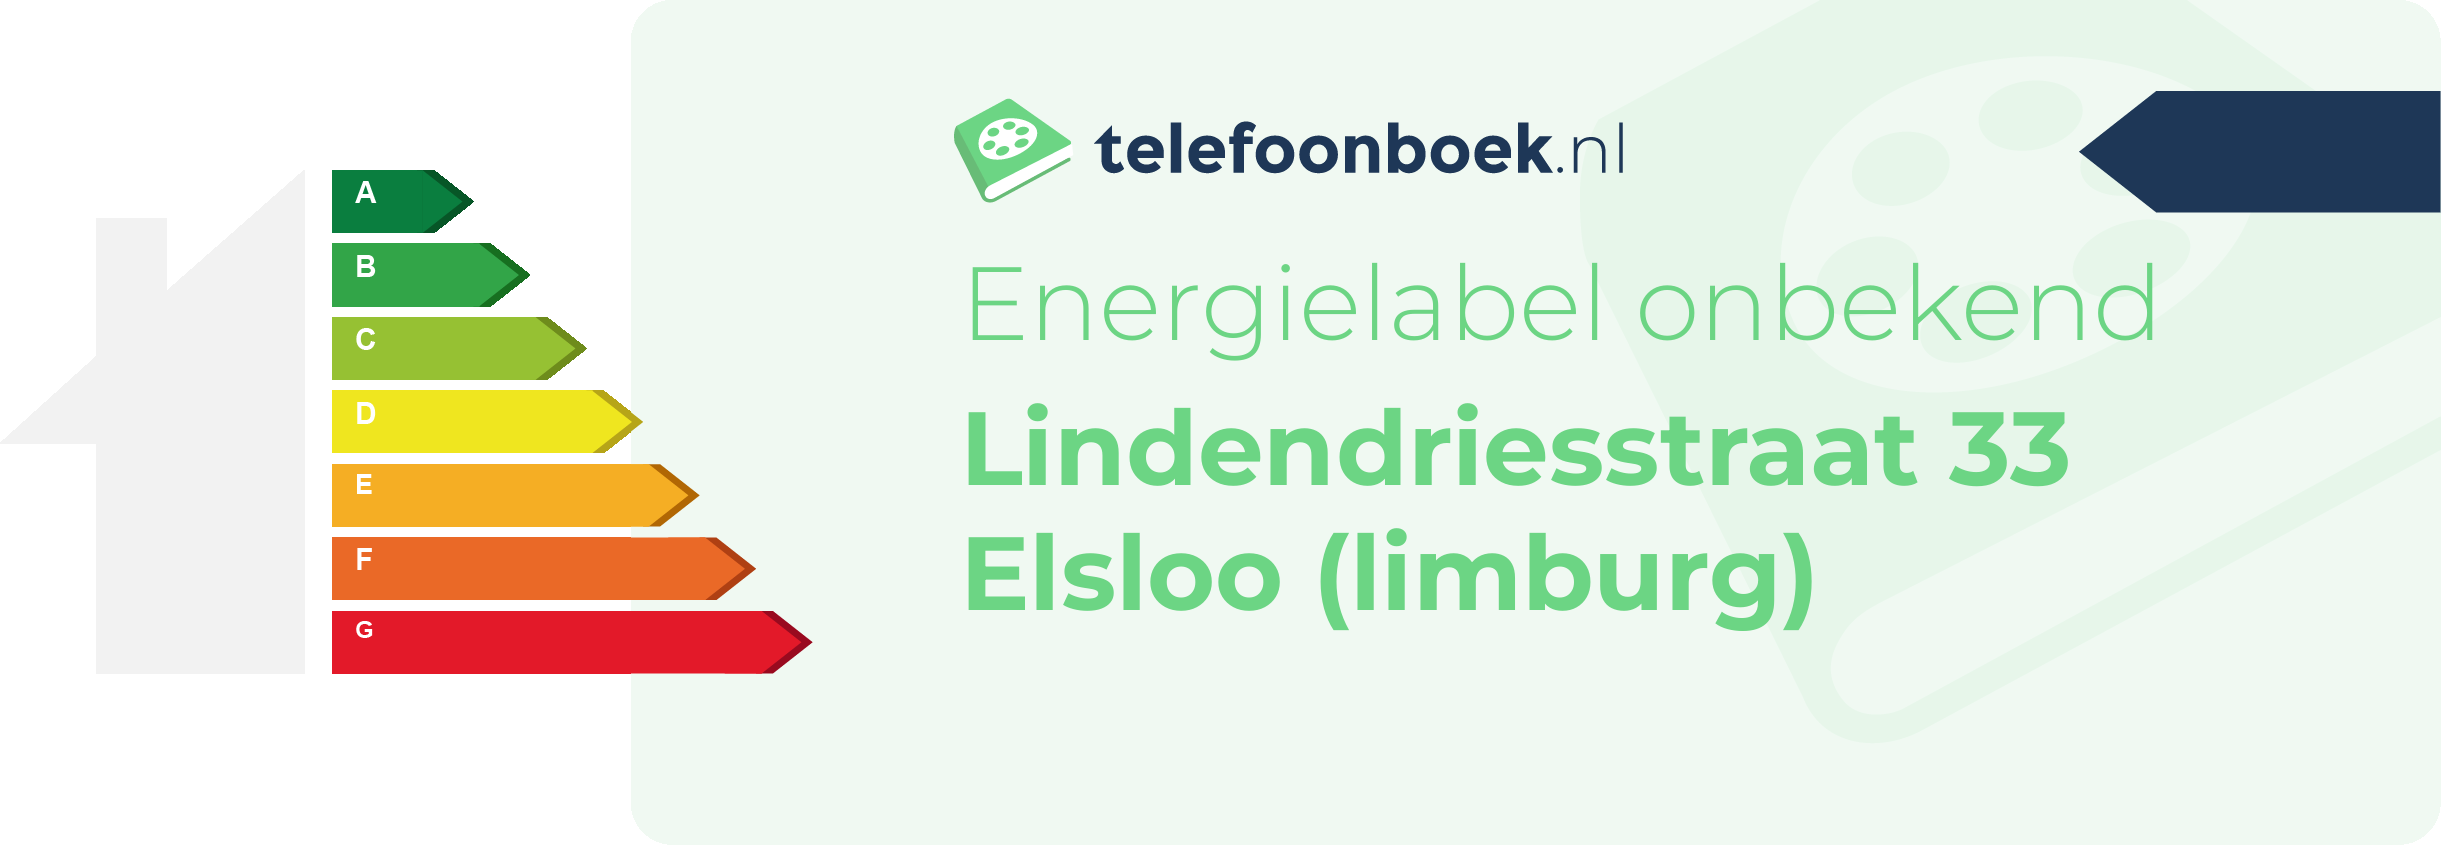 Energielabel Lindendriesstraat 33 Elsloo (Limburg)